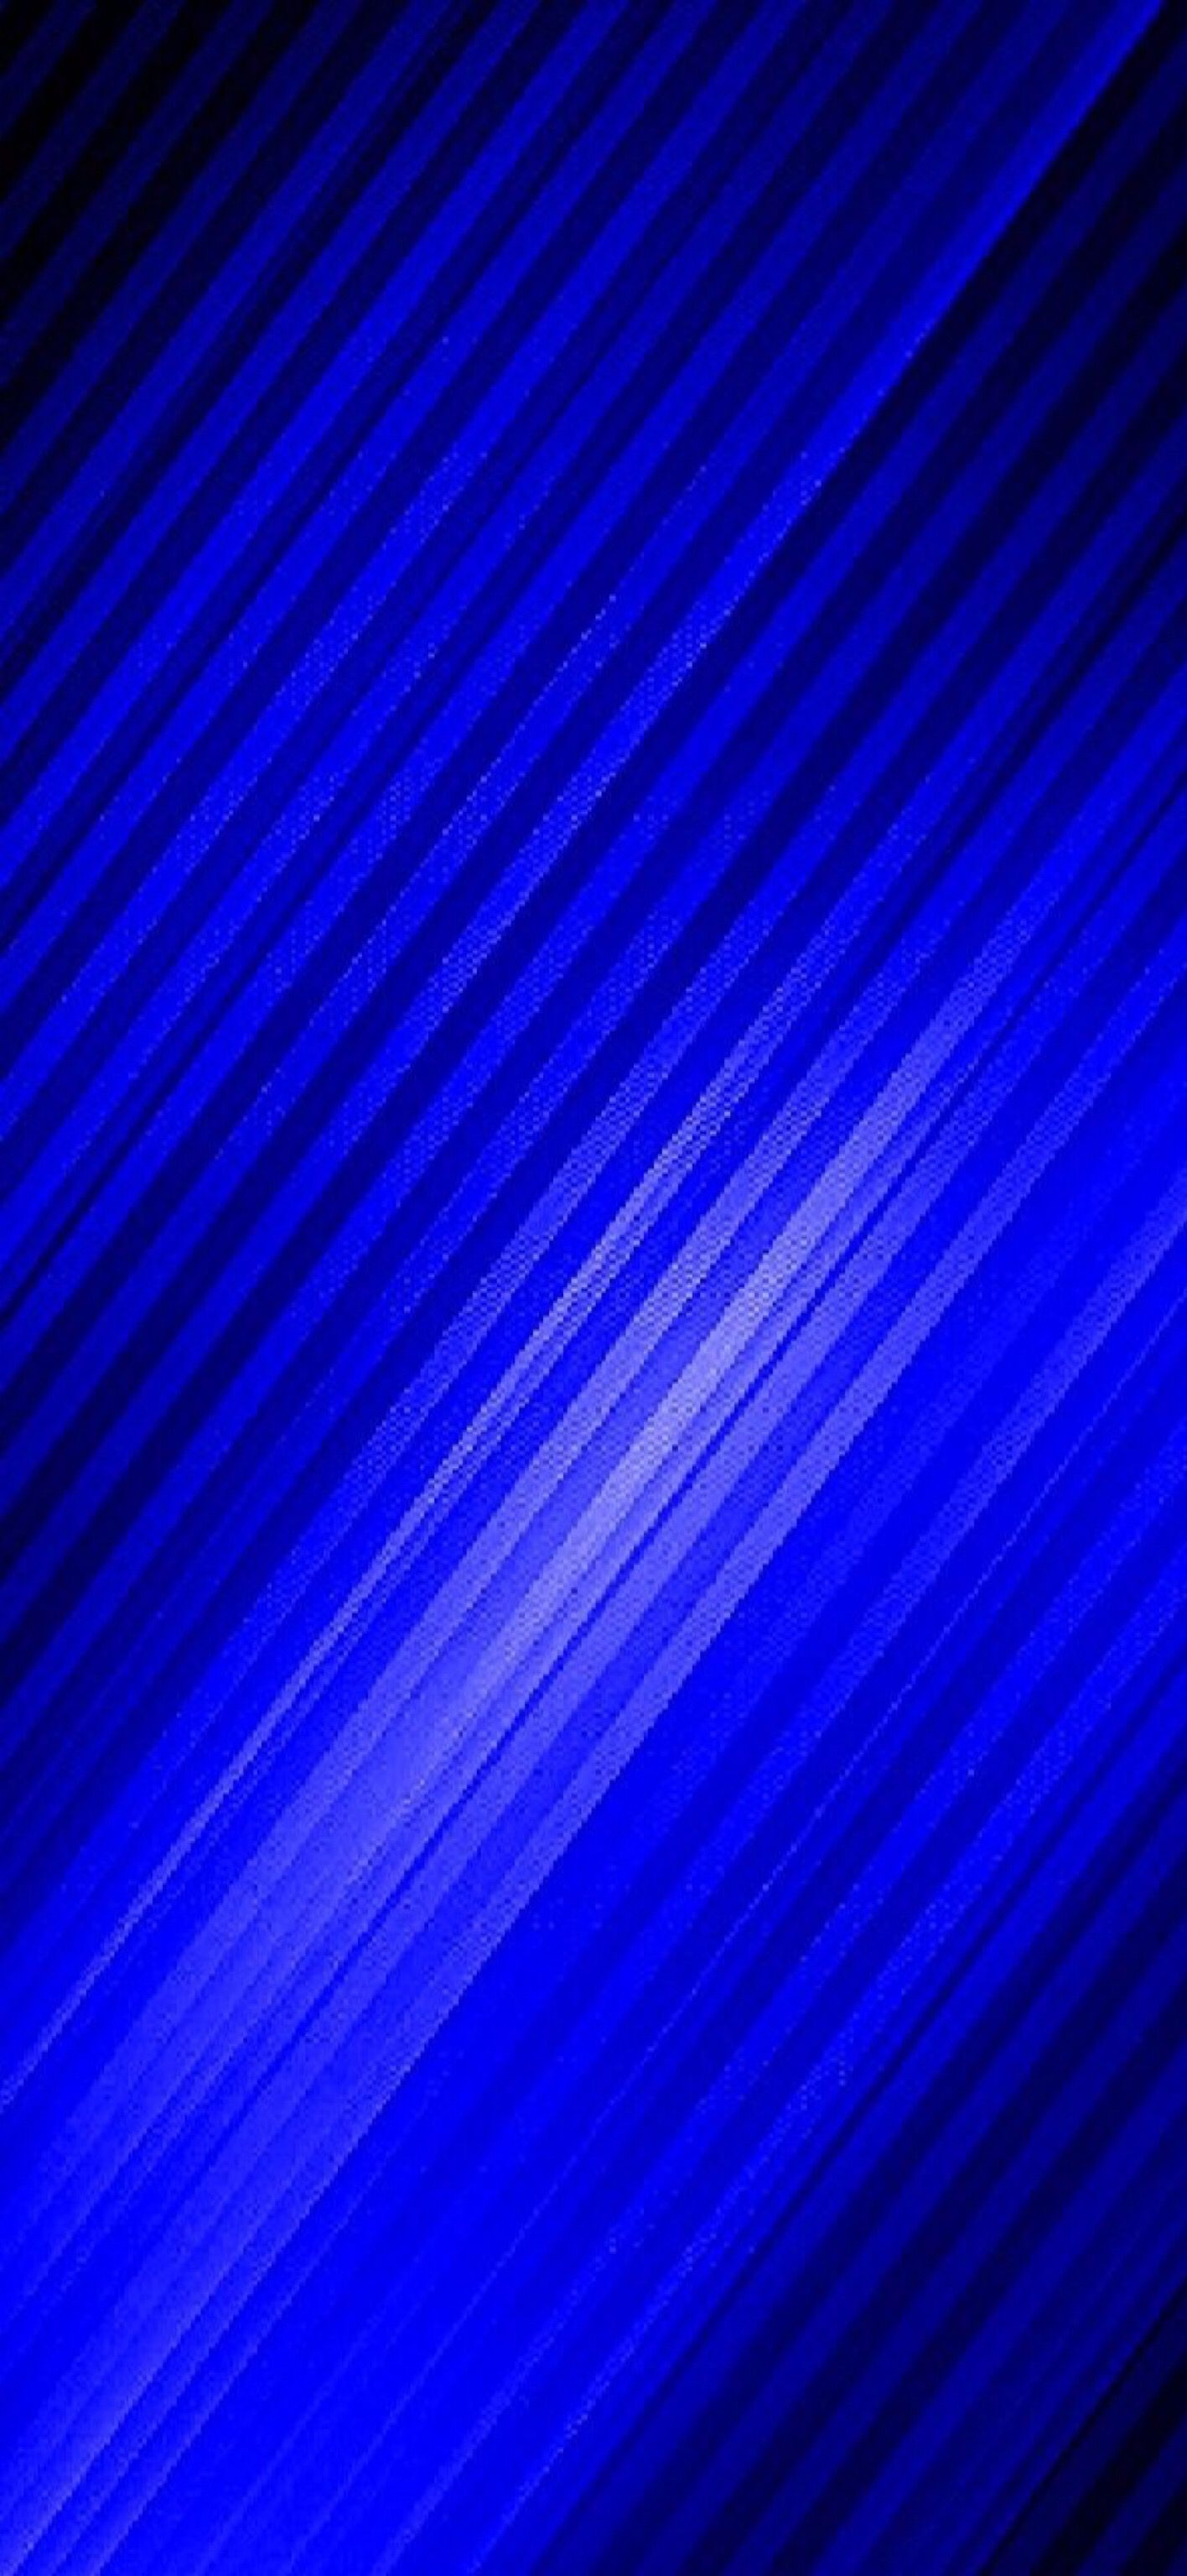 Wallpaper Cobalt Blue 002 for iPhone X. Blue wallpaper, Apple logo, Abstract artwork